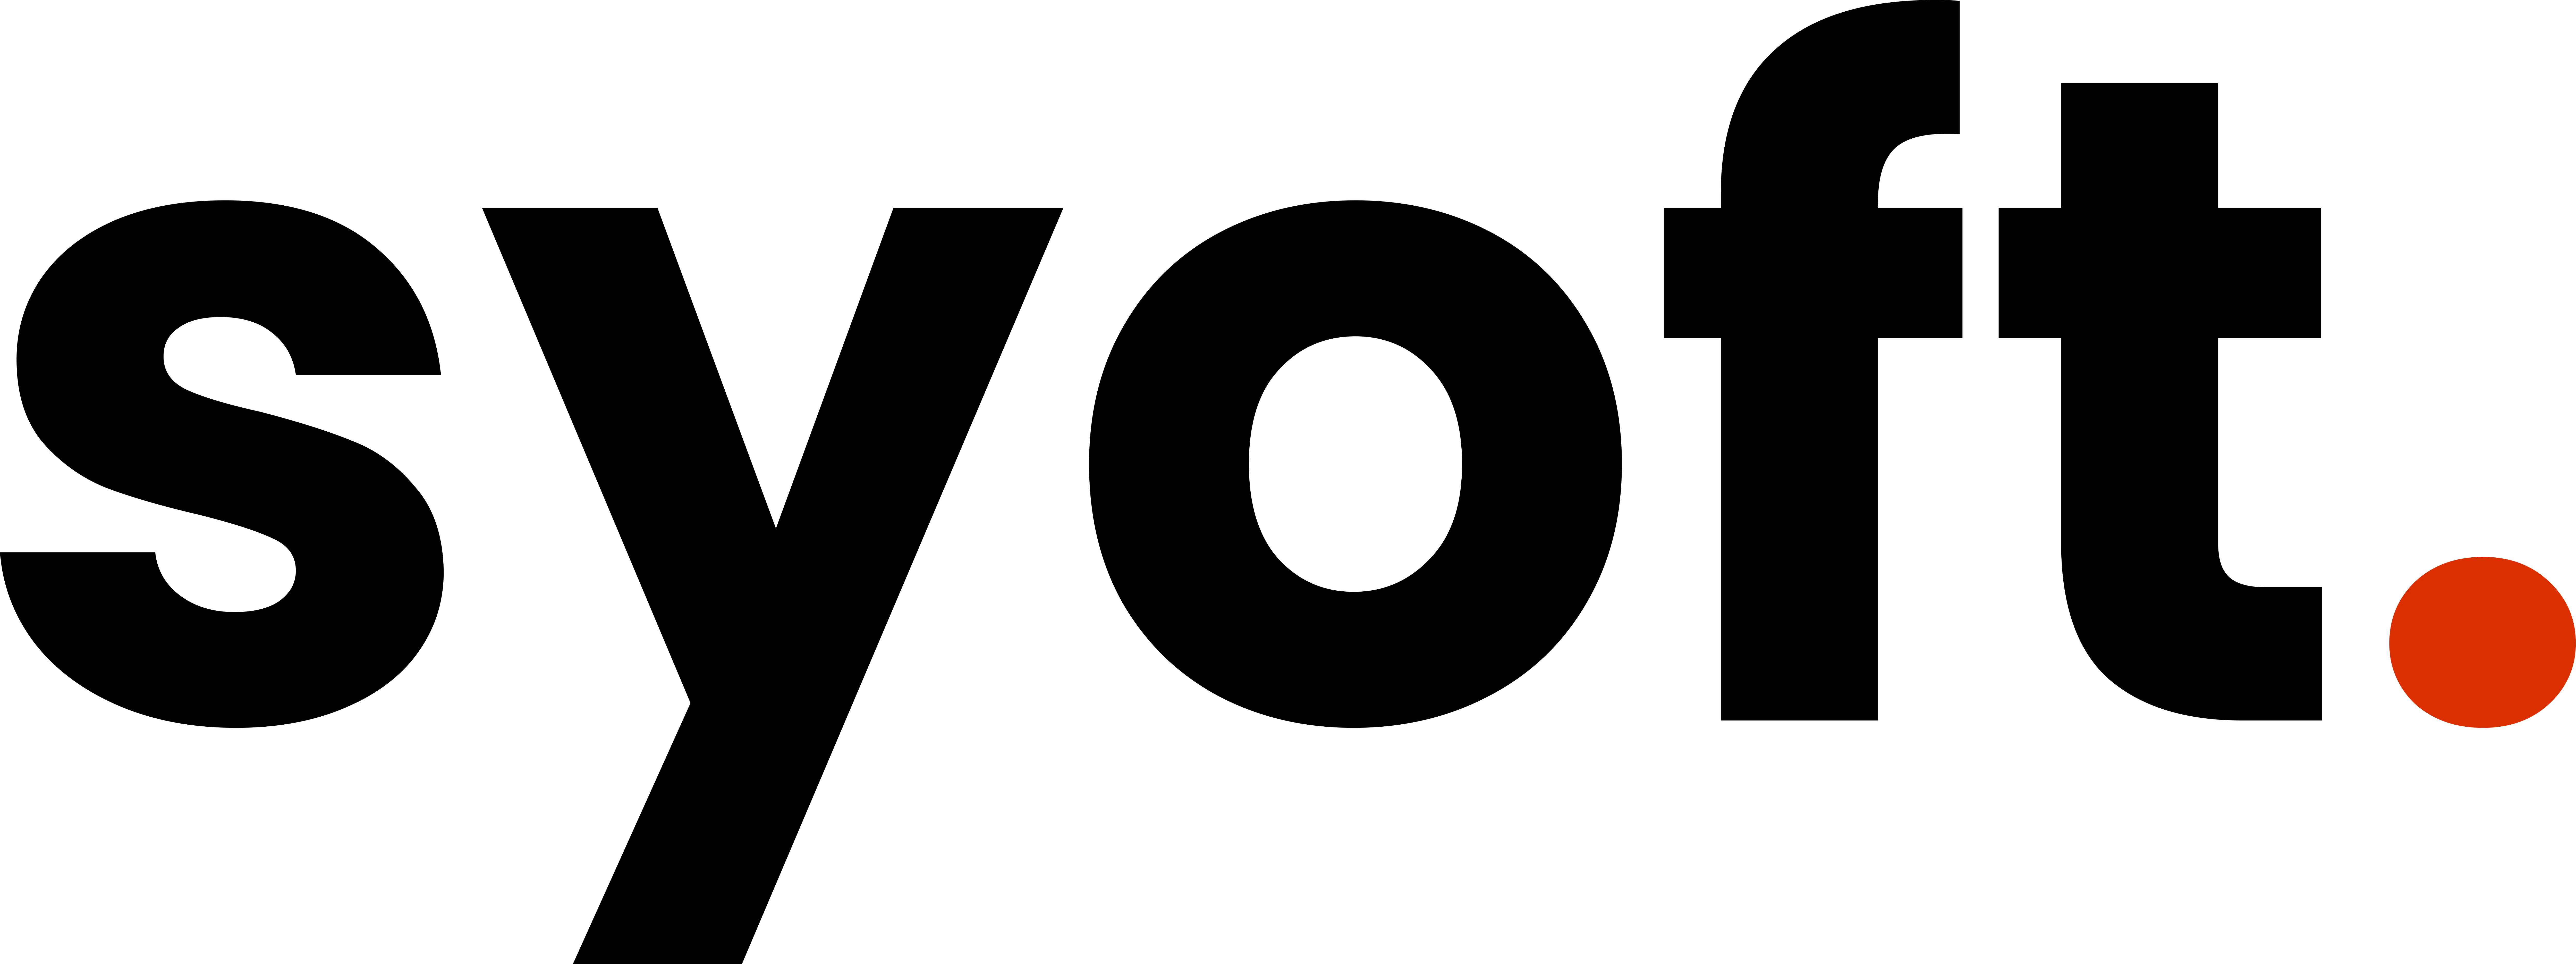 Company logo of Syoft